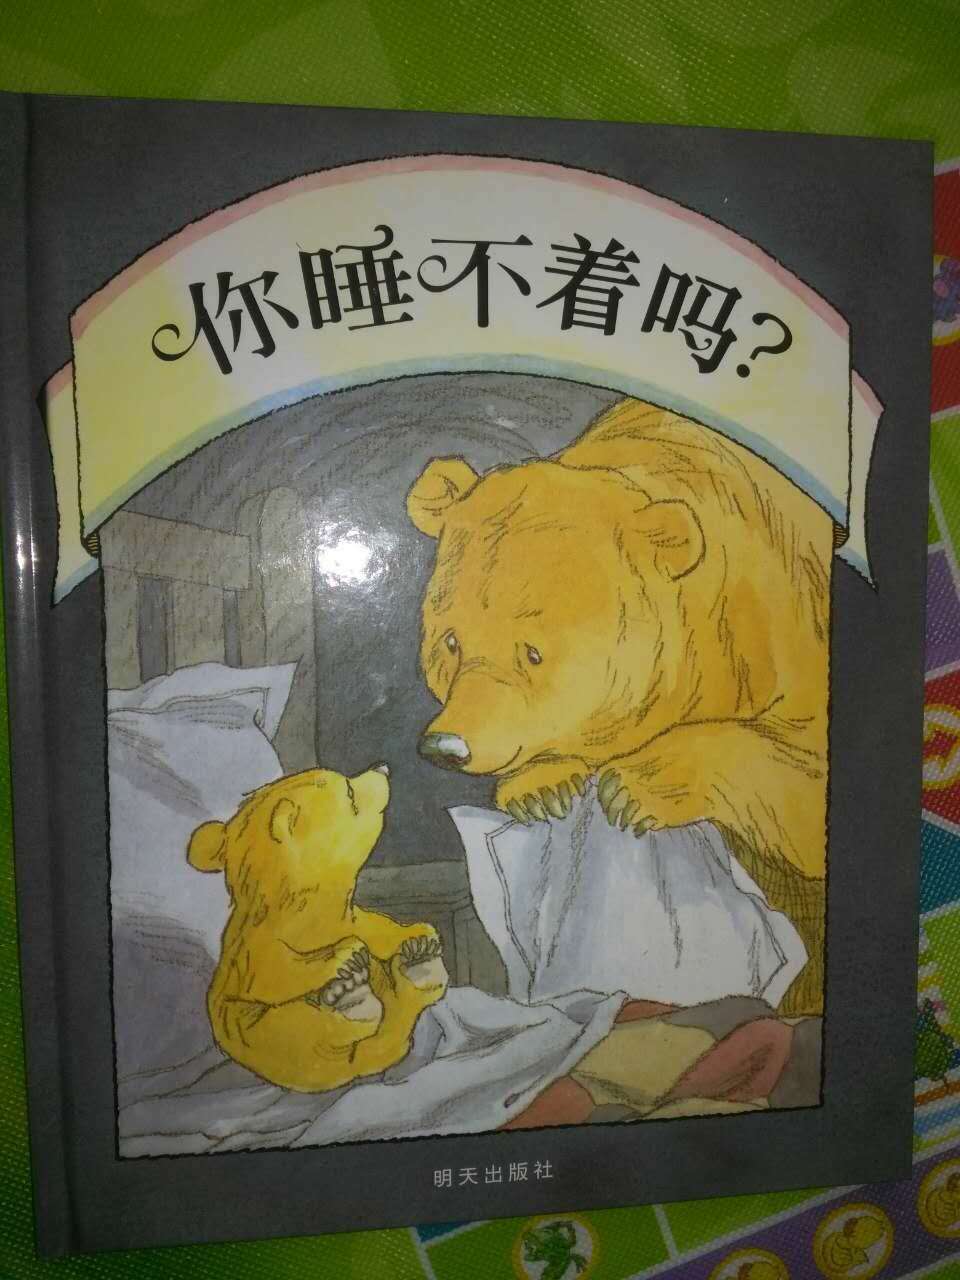 一本用温暖陪孩子赶走黑暗情绪的图画书。绘本里面的小熊熊简直萌翻了，因为怕黑，所以不敢睡觉，也睡不着，于是向正在看书的大熊熊寻求帮助，于是，每次大熊熊读到最精彩的部分时，不得不赶到小熊熊的床前去安慰，如果是我，会觉得很烦，大熊值得我们去学习……